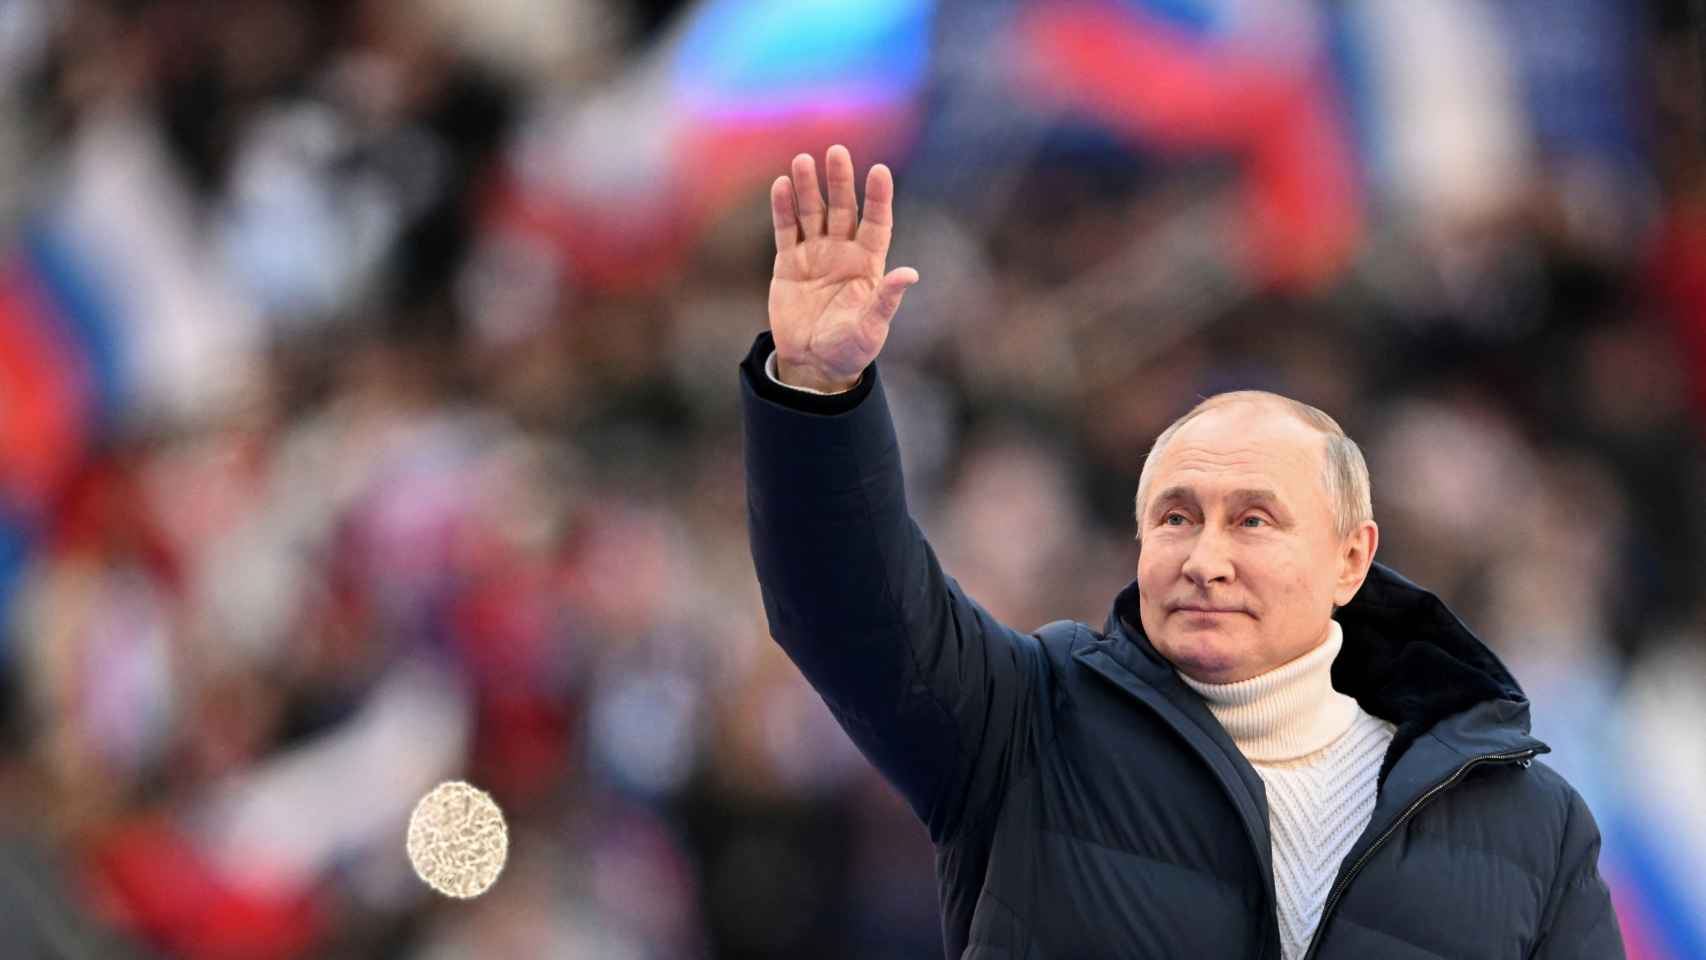 Putin en el estadio de Moscú.